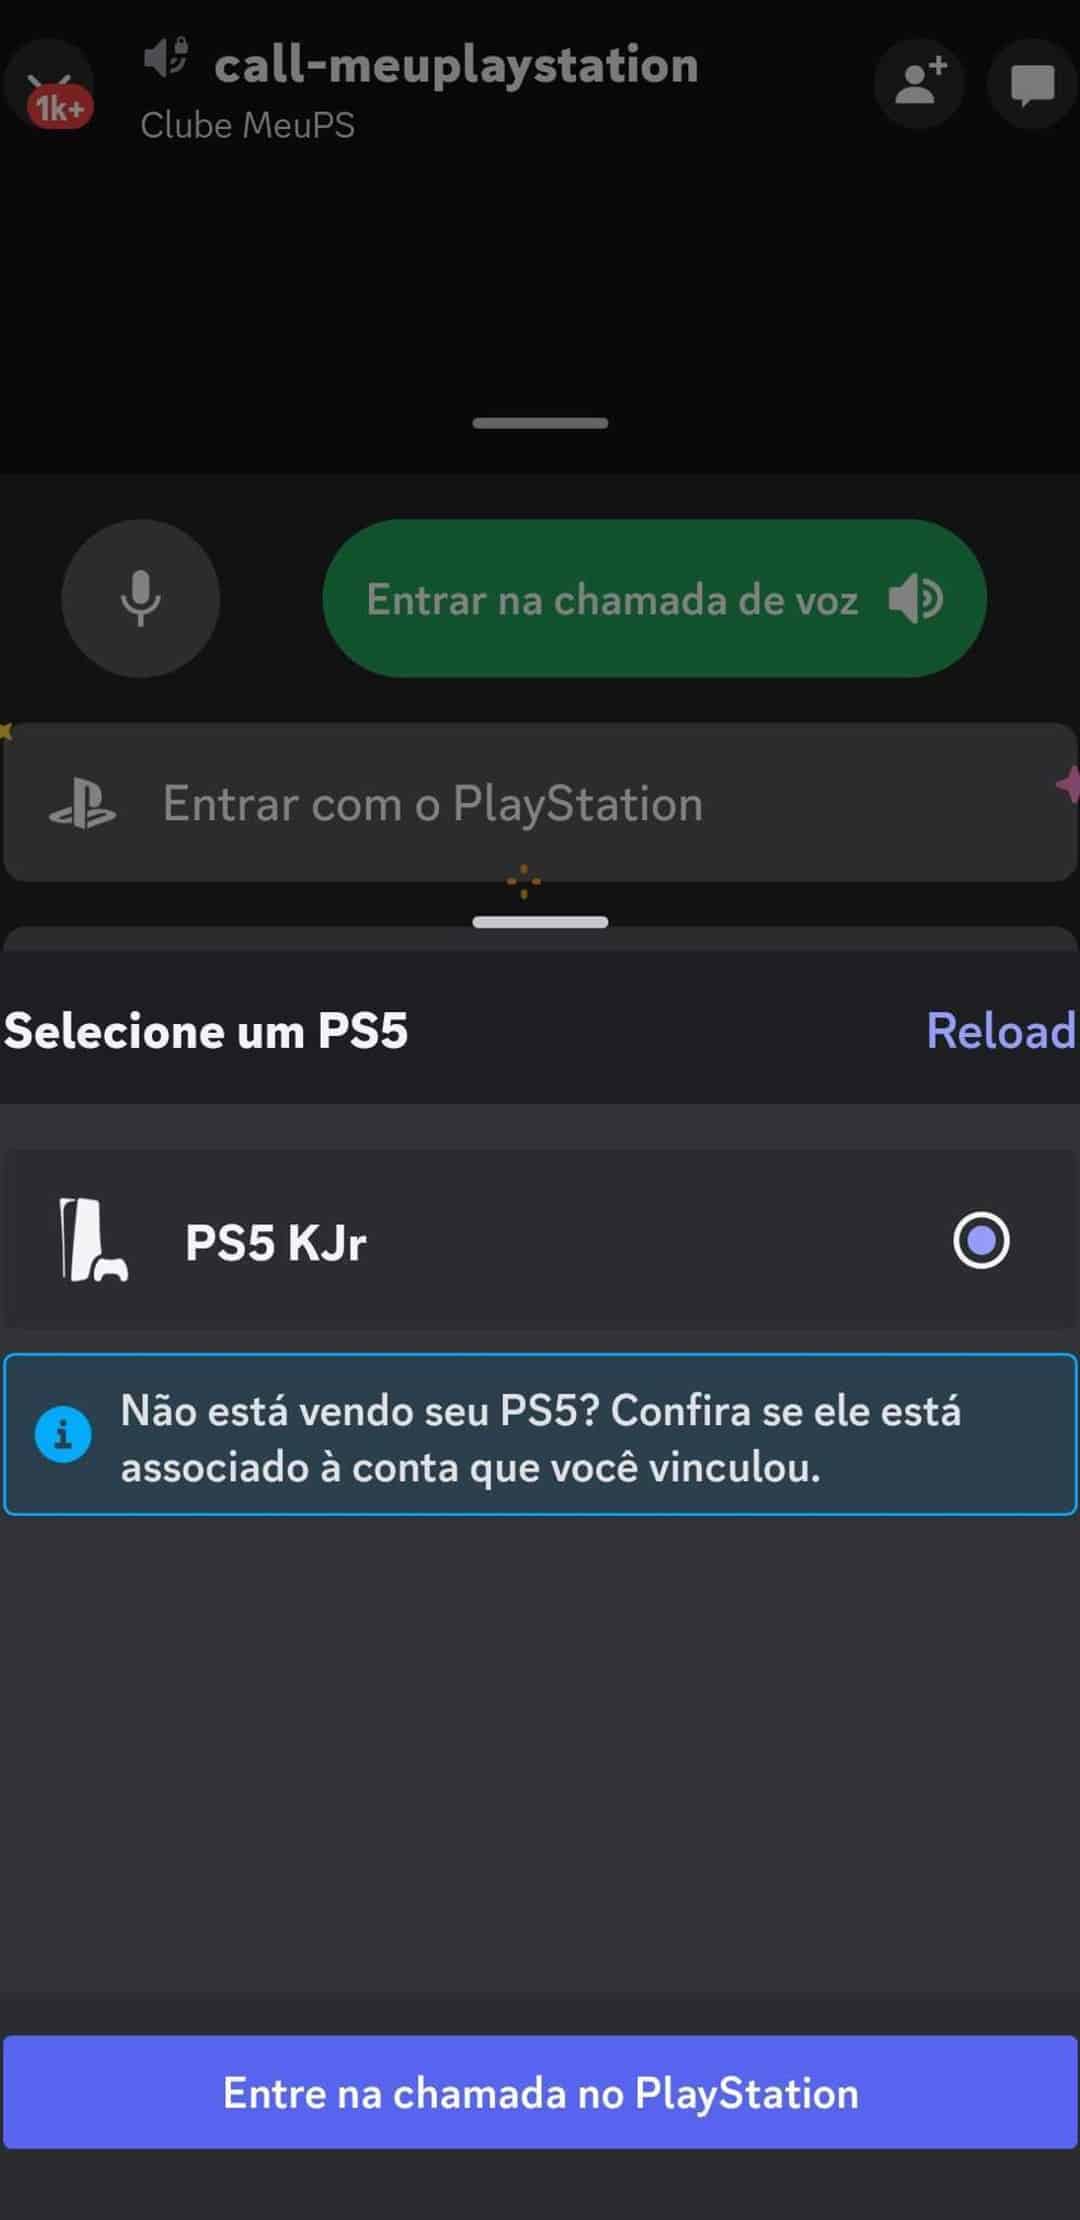 Discord no Playstation: como conectar o aplicativo no PS4 ou PS5